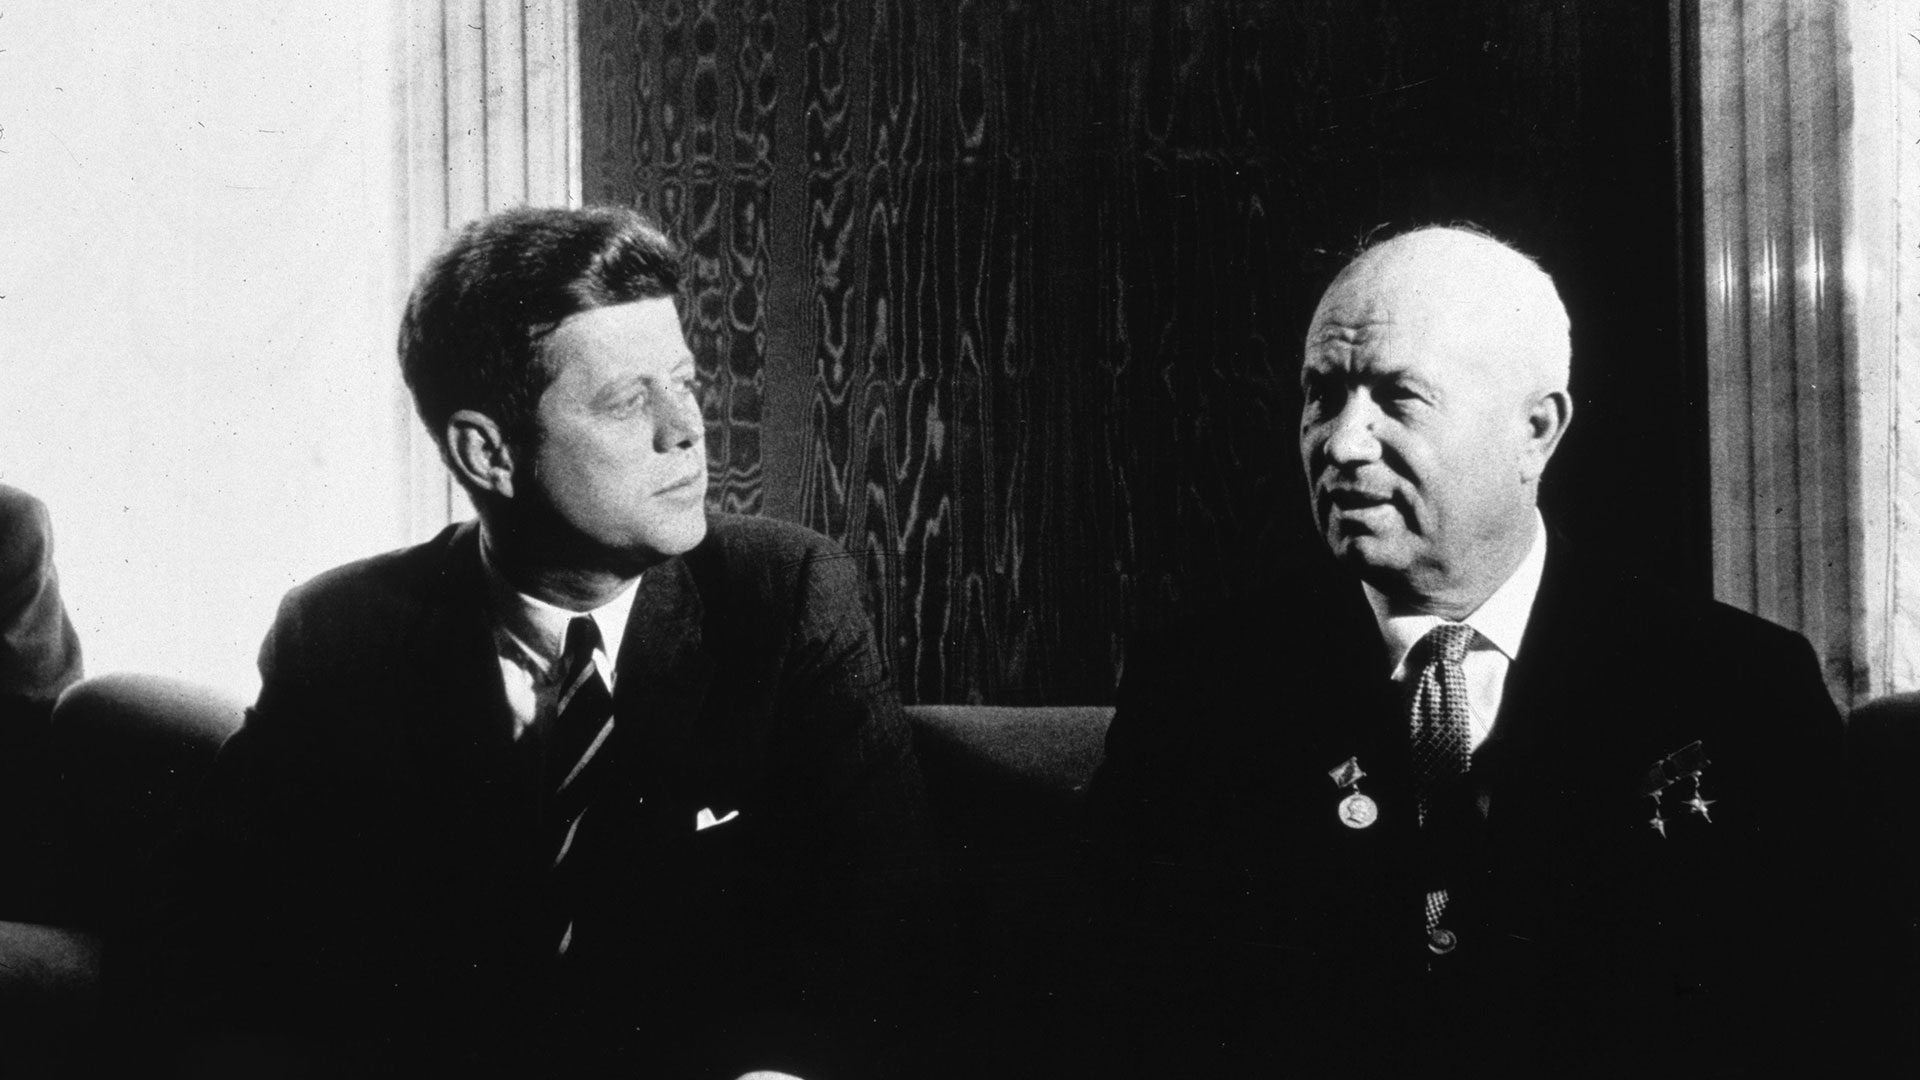  Kennedy había enviado a Khrushchev una carta de respuesta a la del premier soviético de diciembre de 1962, y a su sugerencia de poner fin a las pruebas nucleares (MPI/Getty Images)